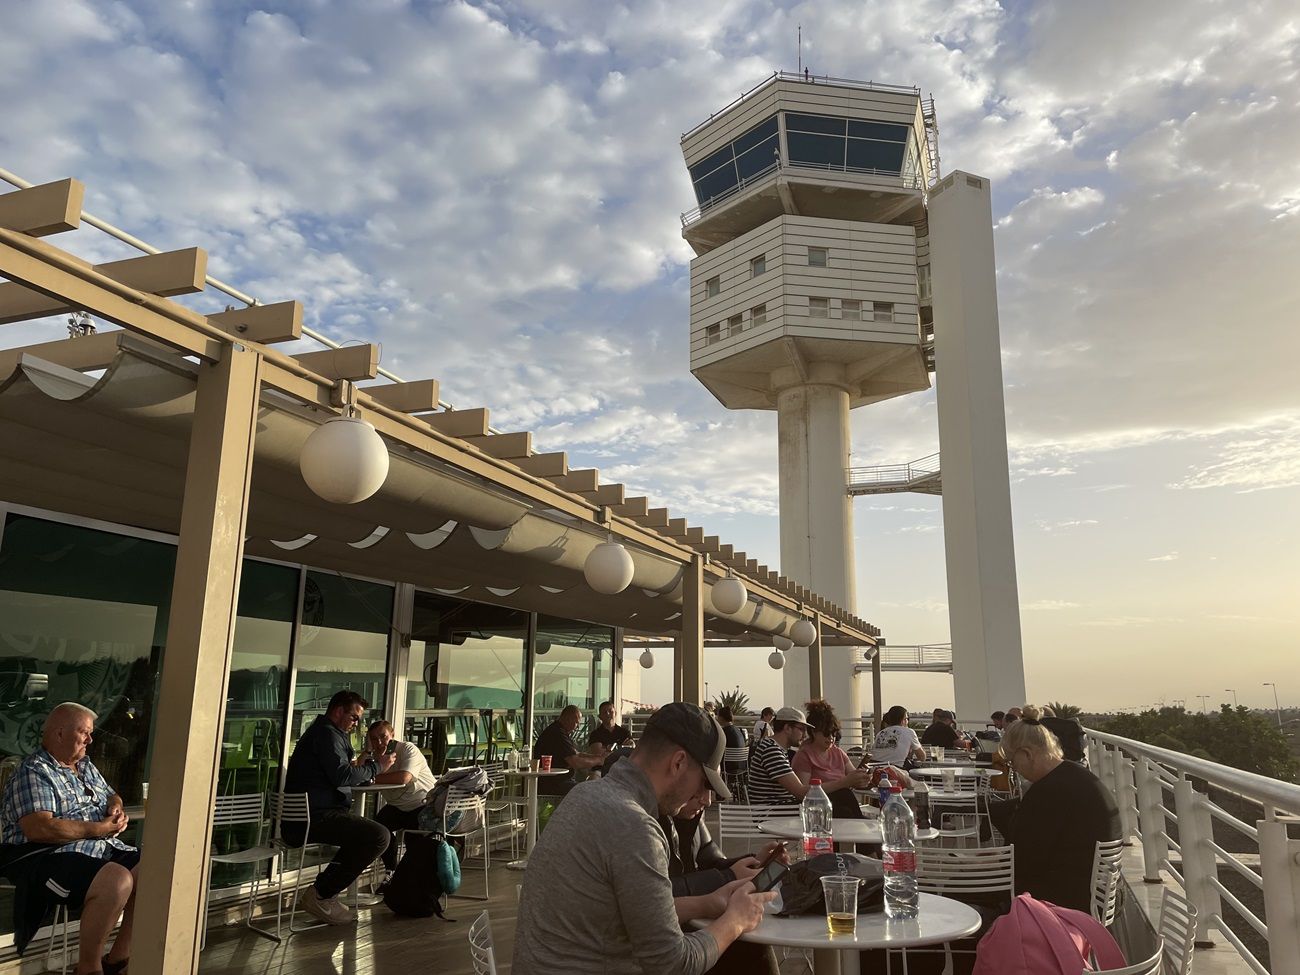 Torre de control desde una terraza del Aeropuerto de Lanzarote. Foto: David Merino Fernández